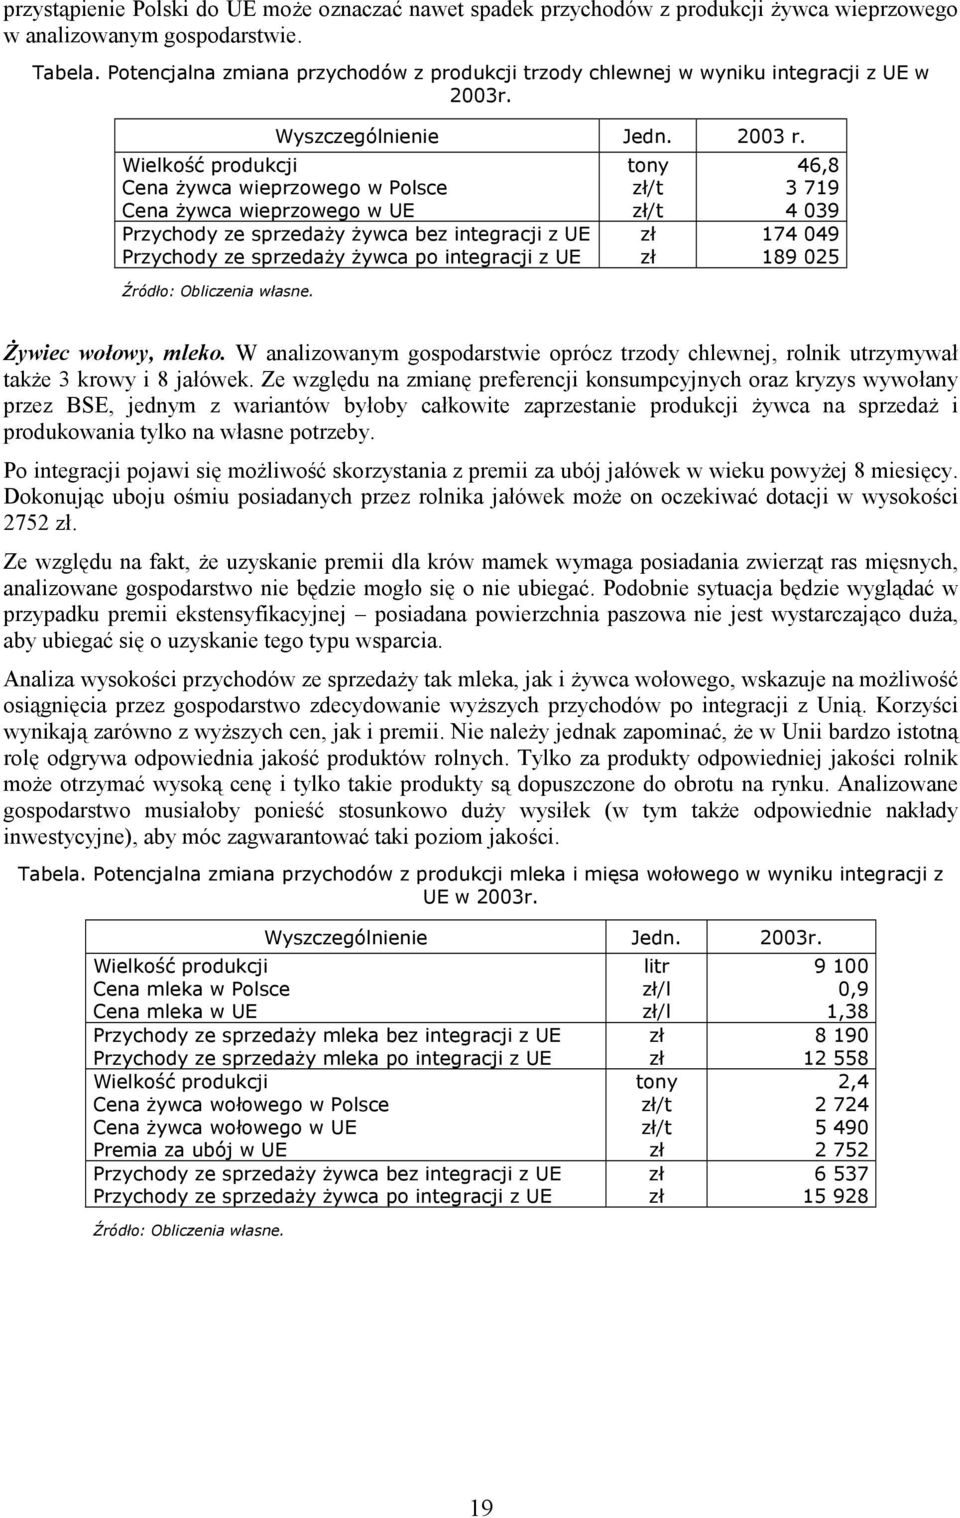 Wielkość produkcji Cena żywca wieprzowego w Polsce Cena żywca wieprzowego w UE Przychody ze sprzedaży żywca bez integracji z UE Przychody ze sprzedaży żywca po integracji z UE tony /t /t 46,8 3 719 4